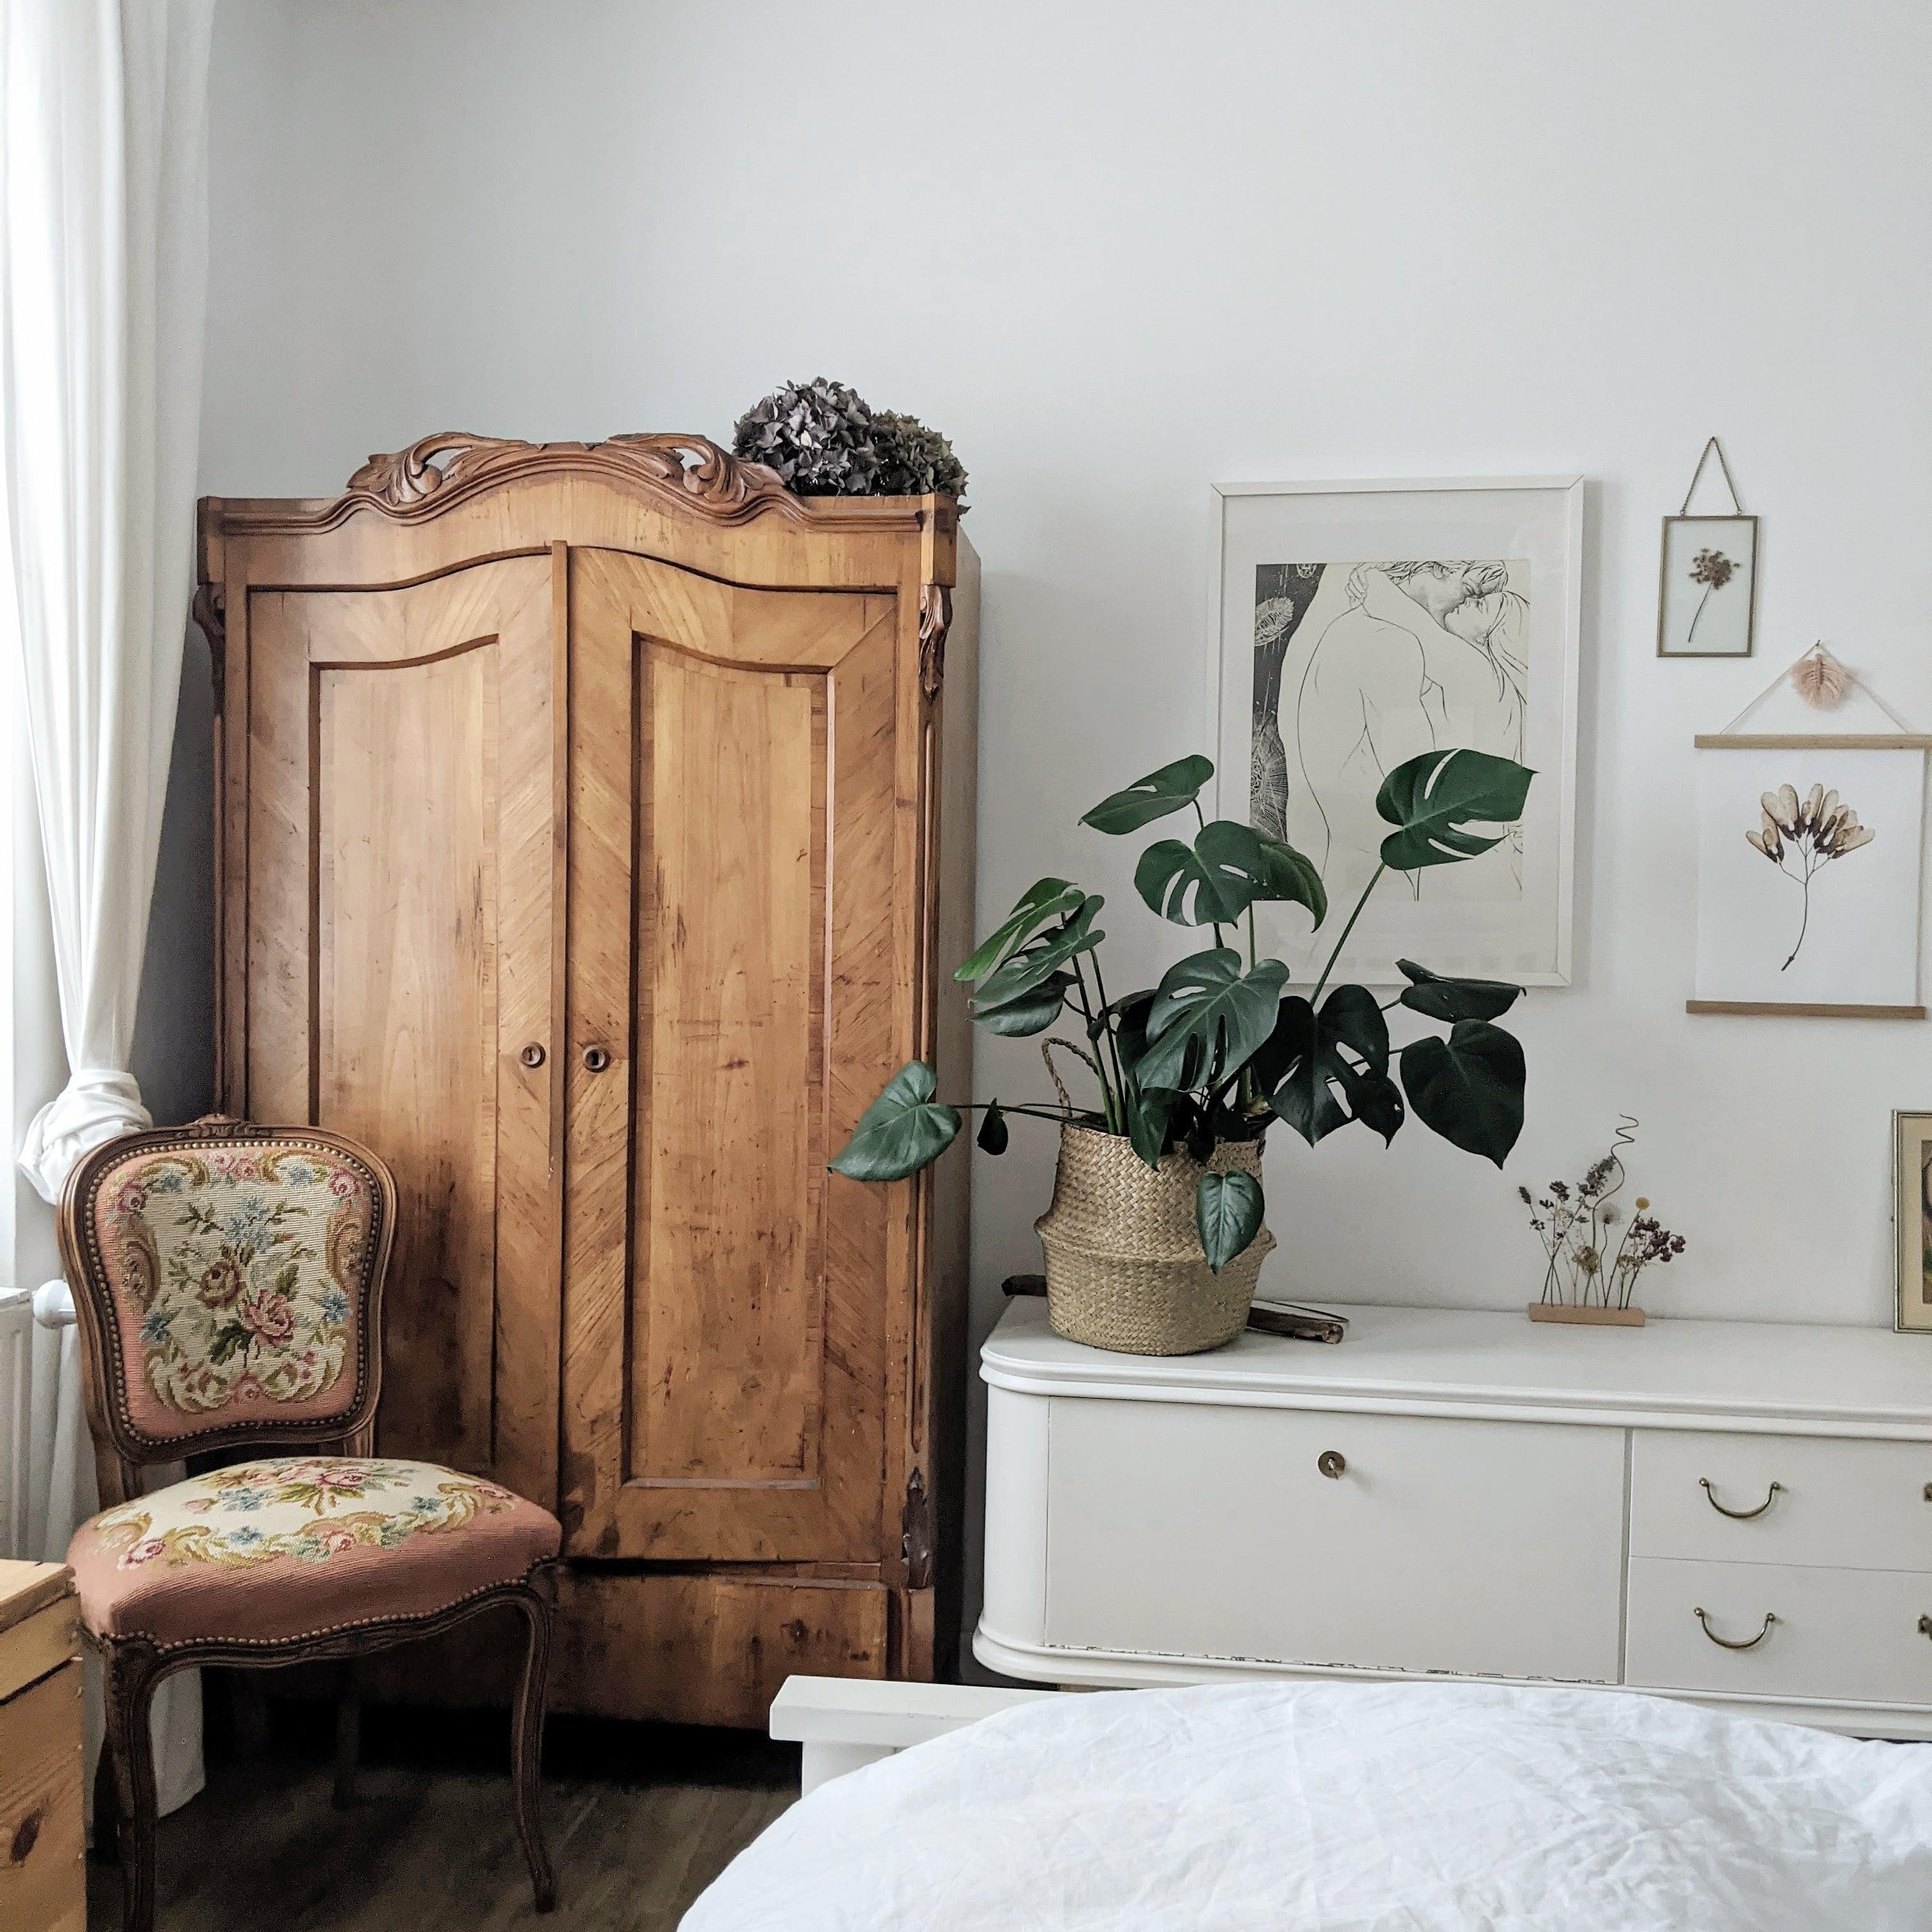 Bauernschrankliebe in groß und klein 🤎 #schlafzimmer #bedview #monstera #pflanzenliebe #bauernschrank #retro #vintage 